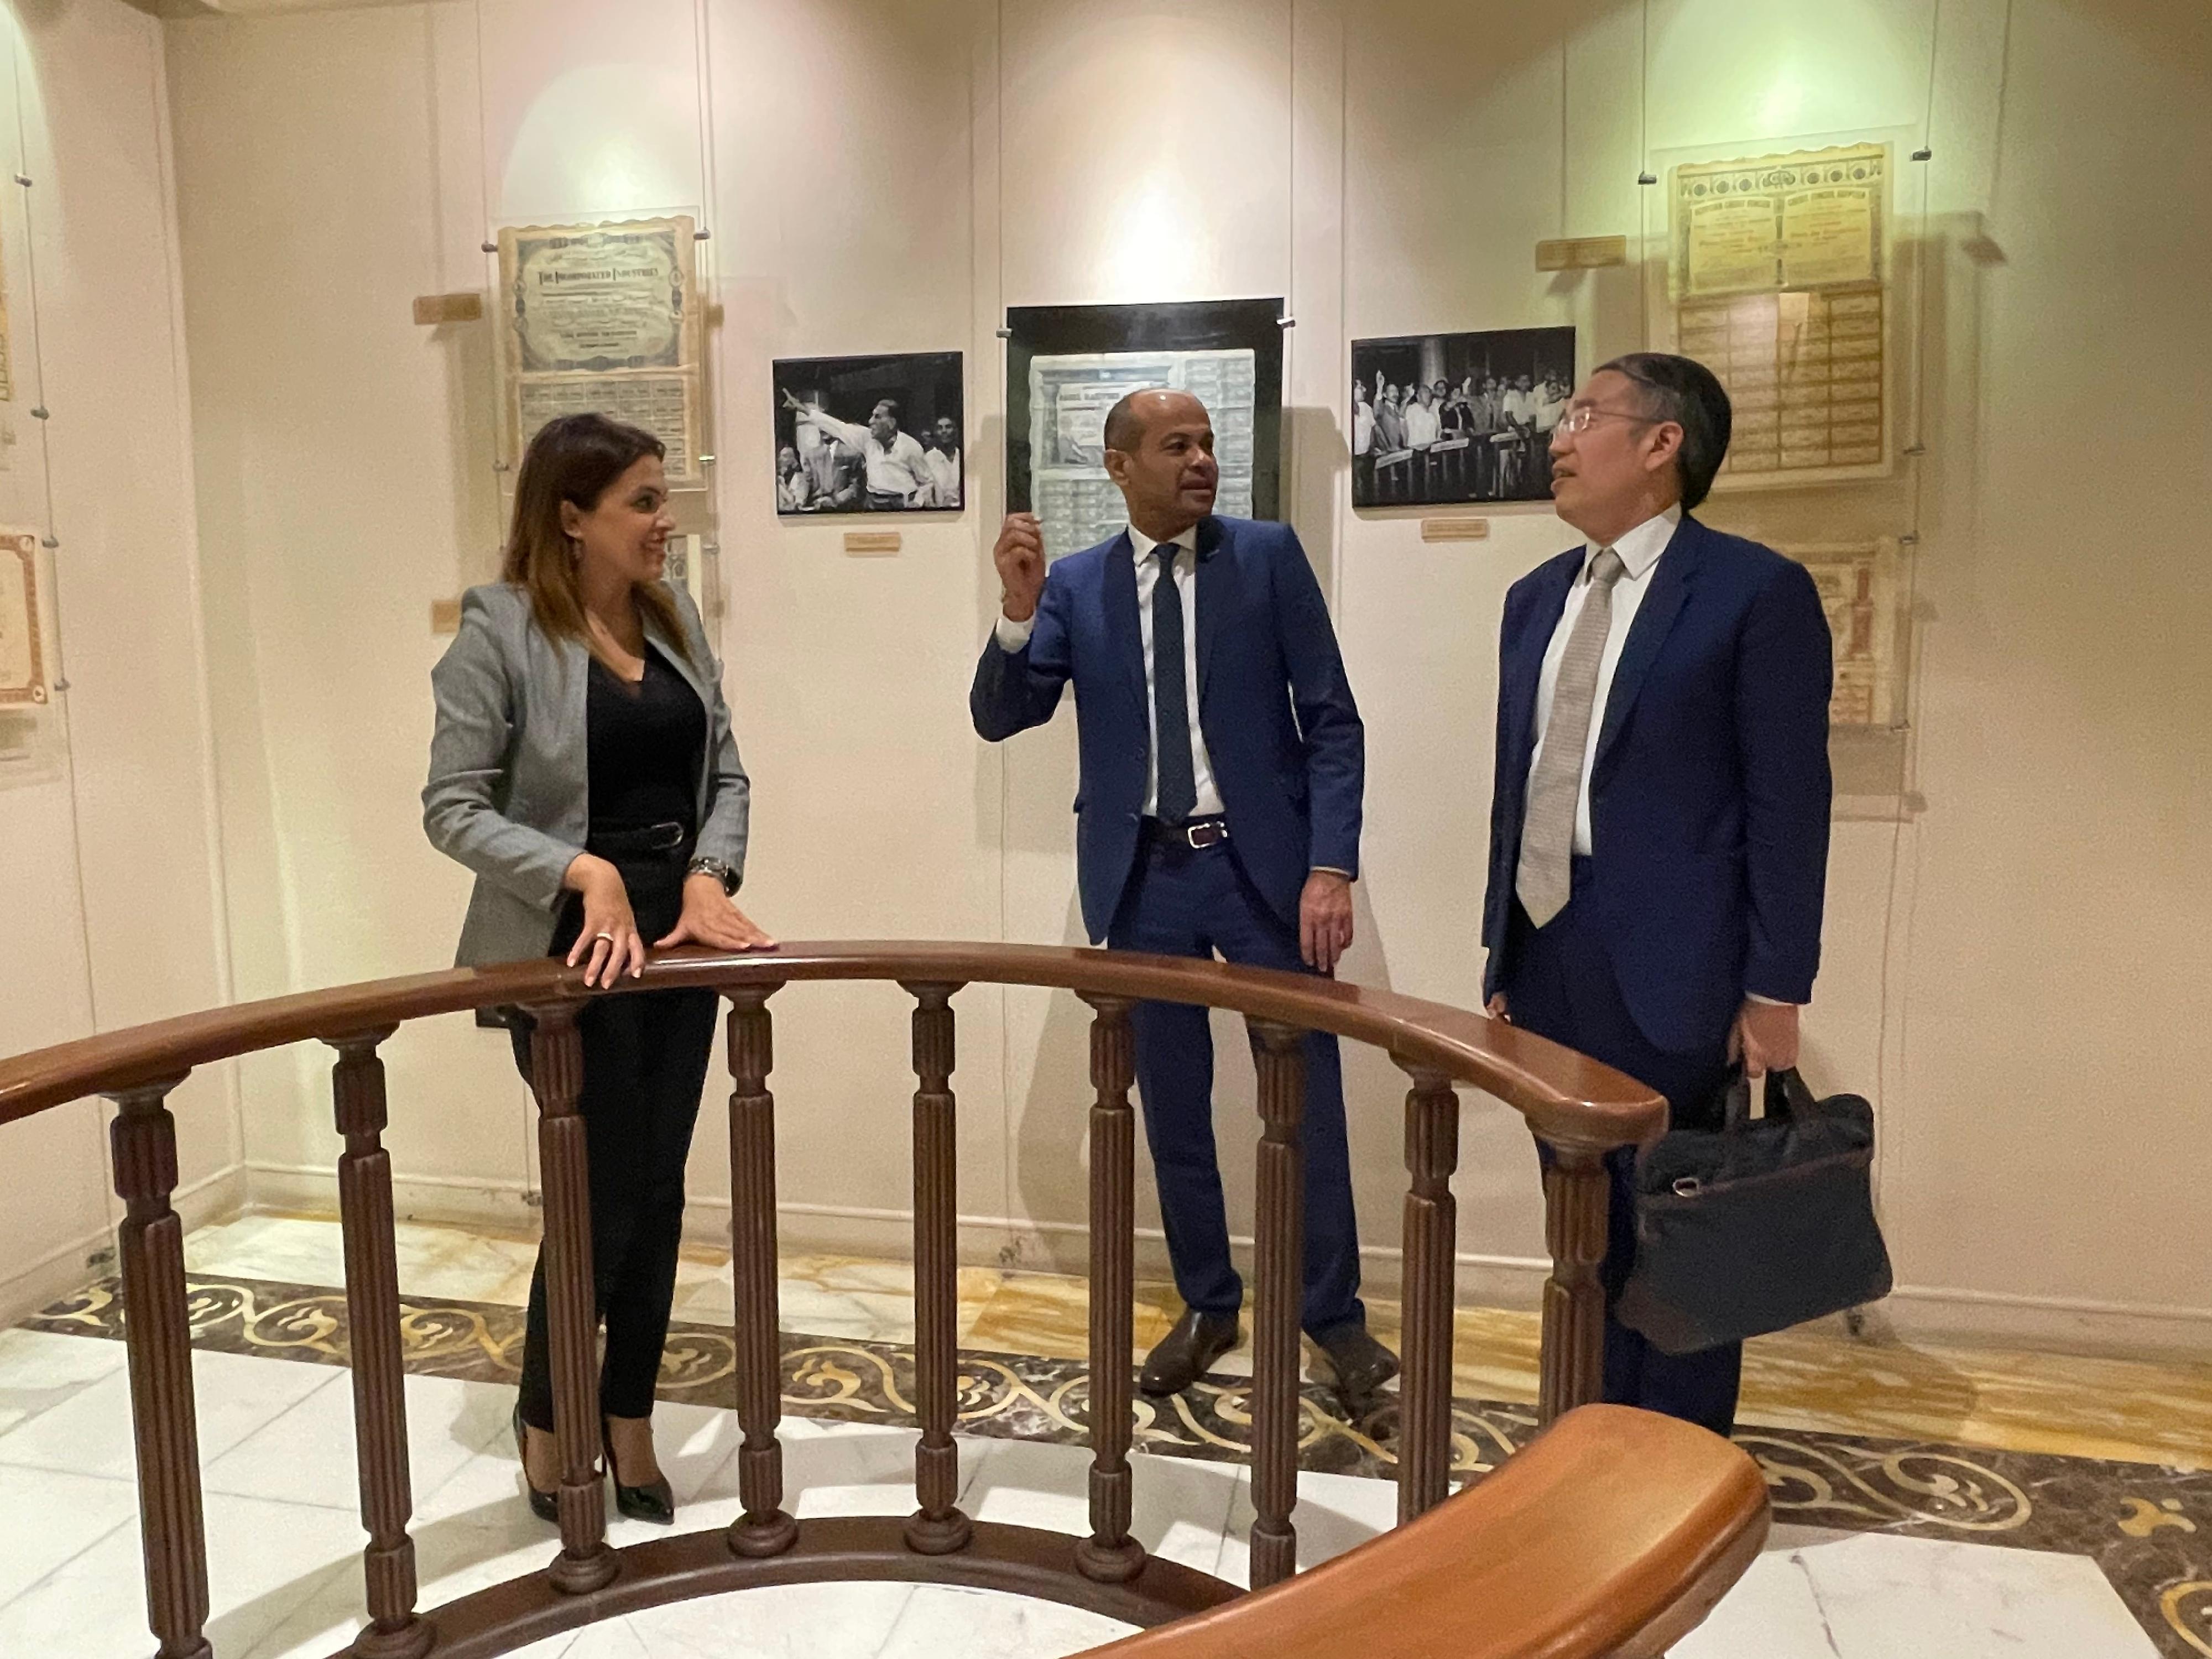 財經事務及庫務局局長許正宇繼續在埃及的訪問行程。圖示許正宇（右一）於九月二十三日（開羅時間）在開羅參觀埃及證券交易所展覽廳。其左為埃及證券交易所執行主席Ahmed Abdel Rahman El Sheikh。
